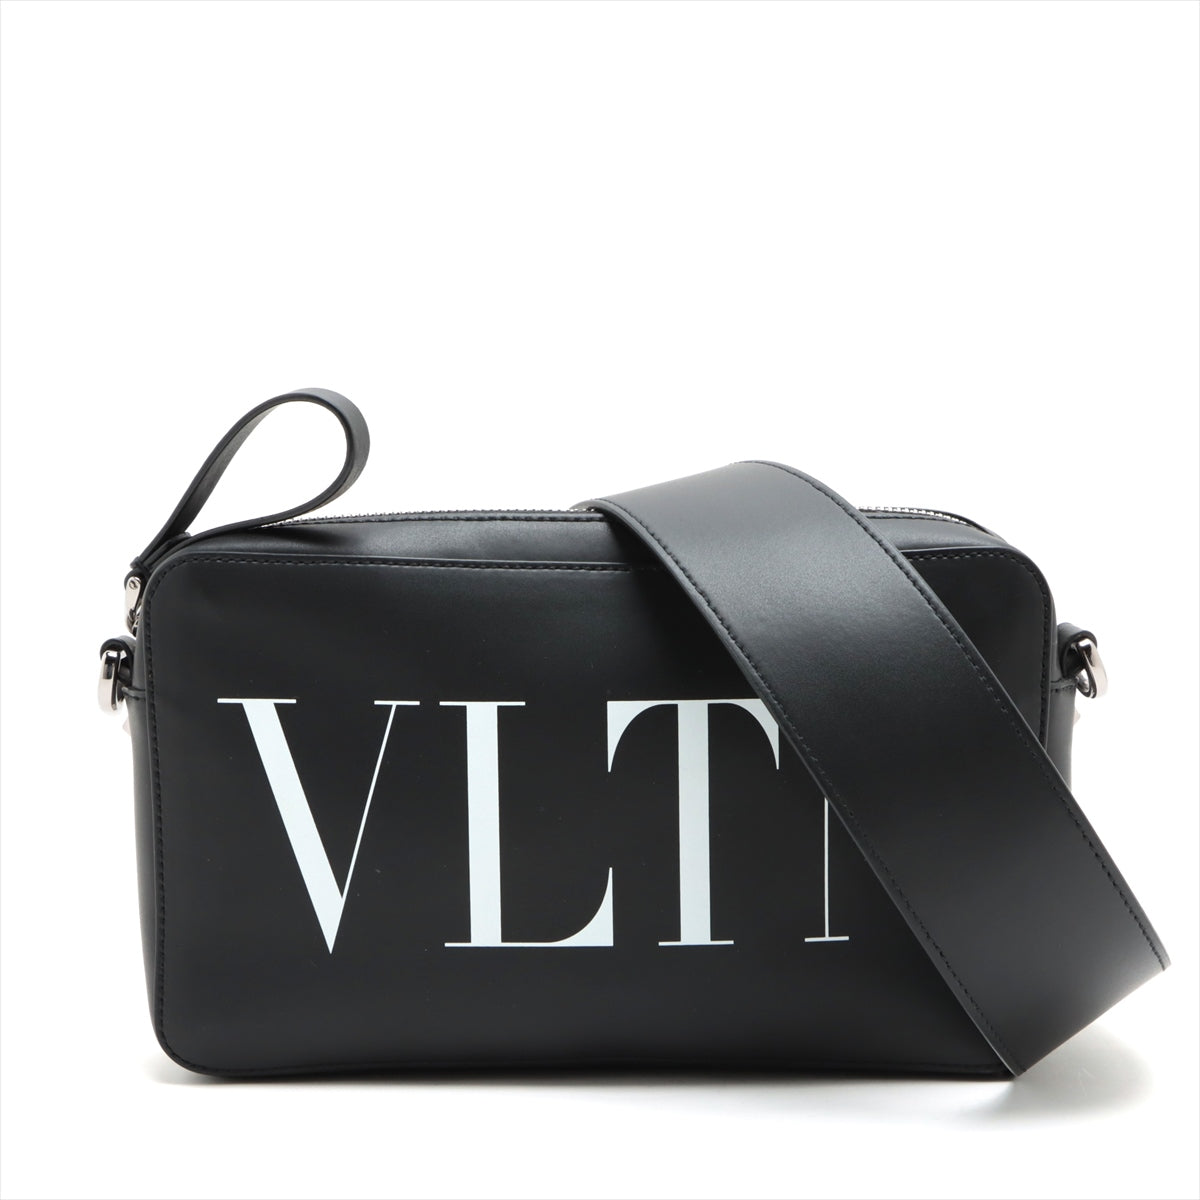 Valentino Garavani VLTN Leather Shoulder Bag Black